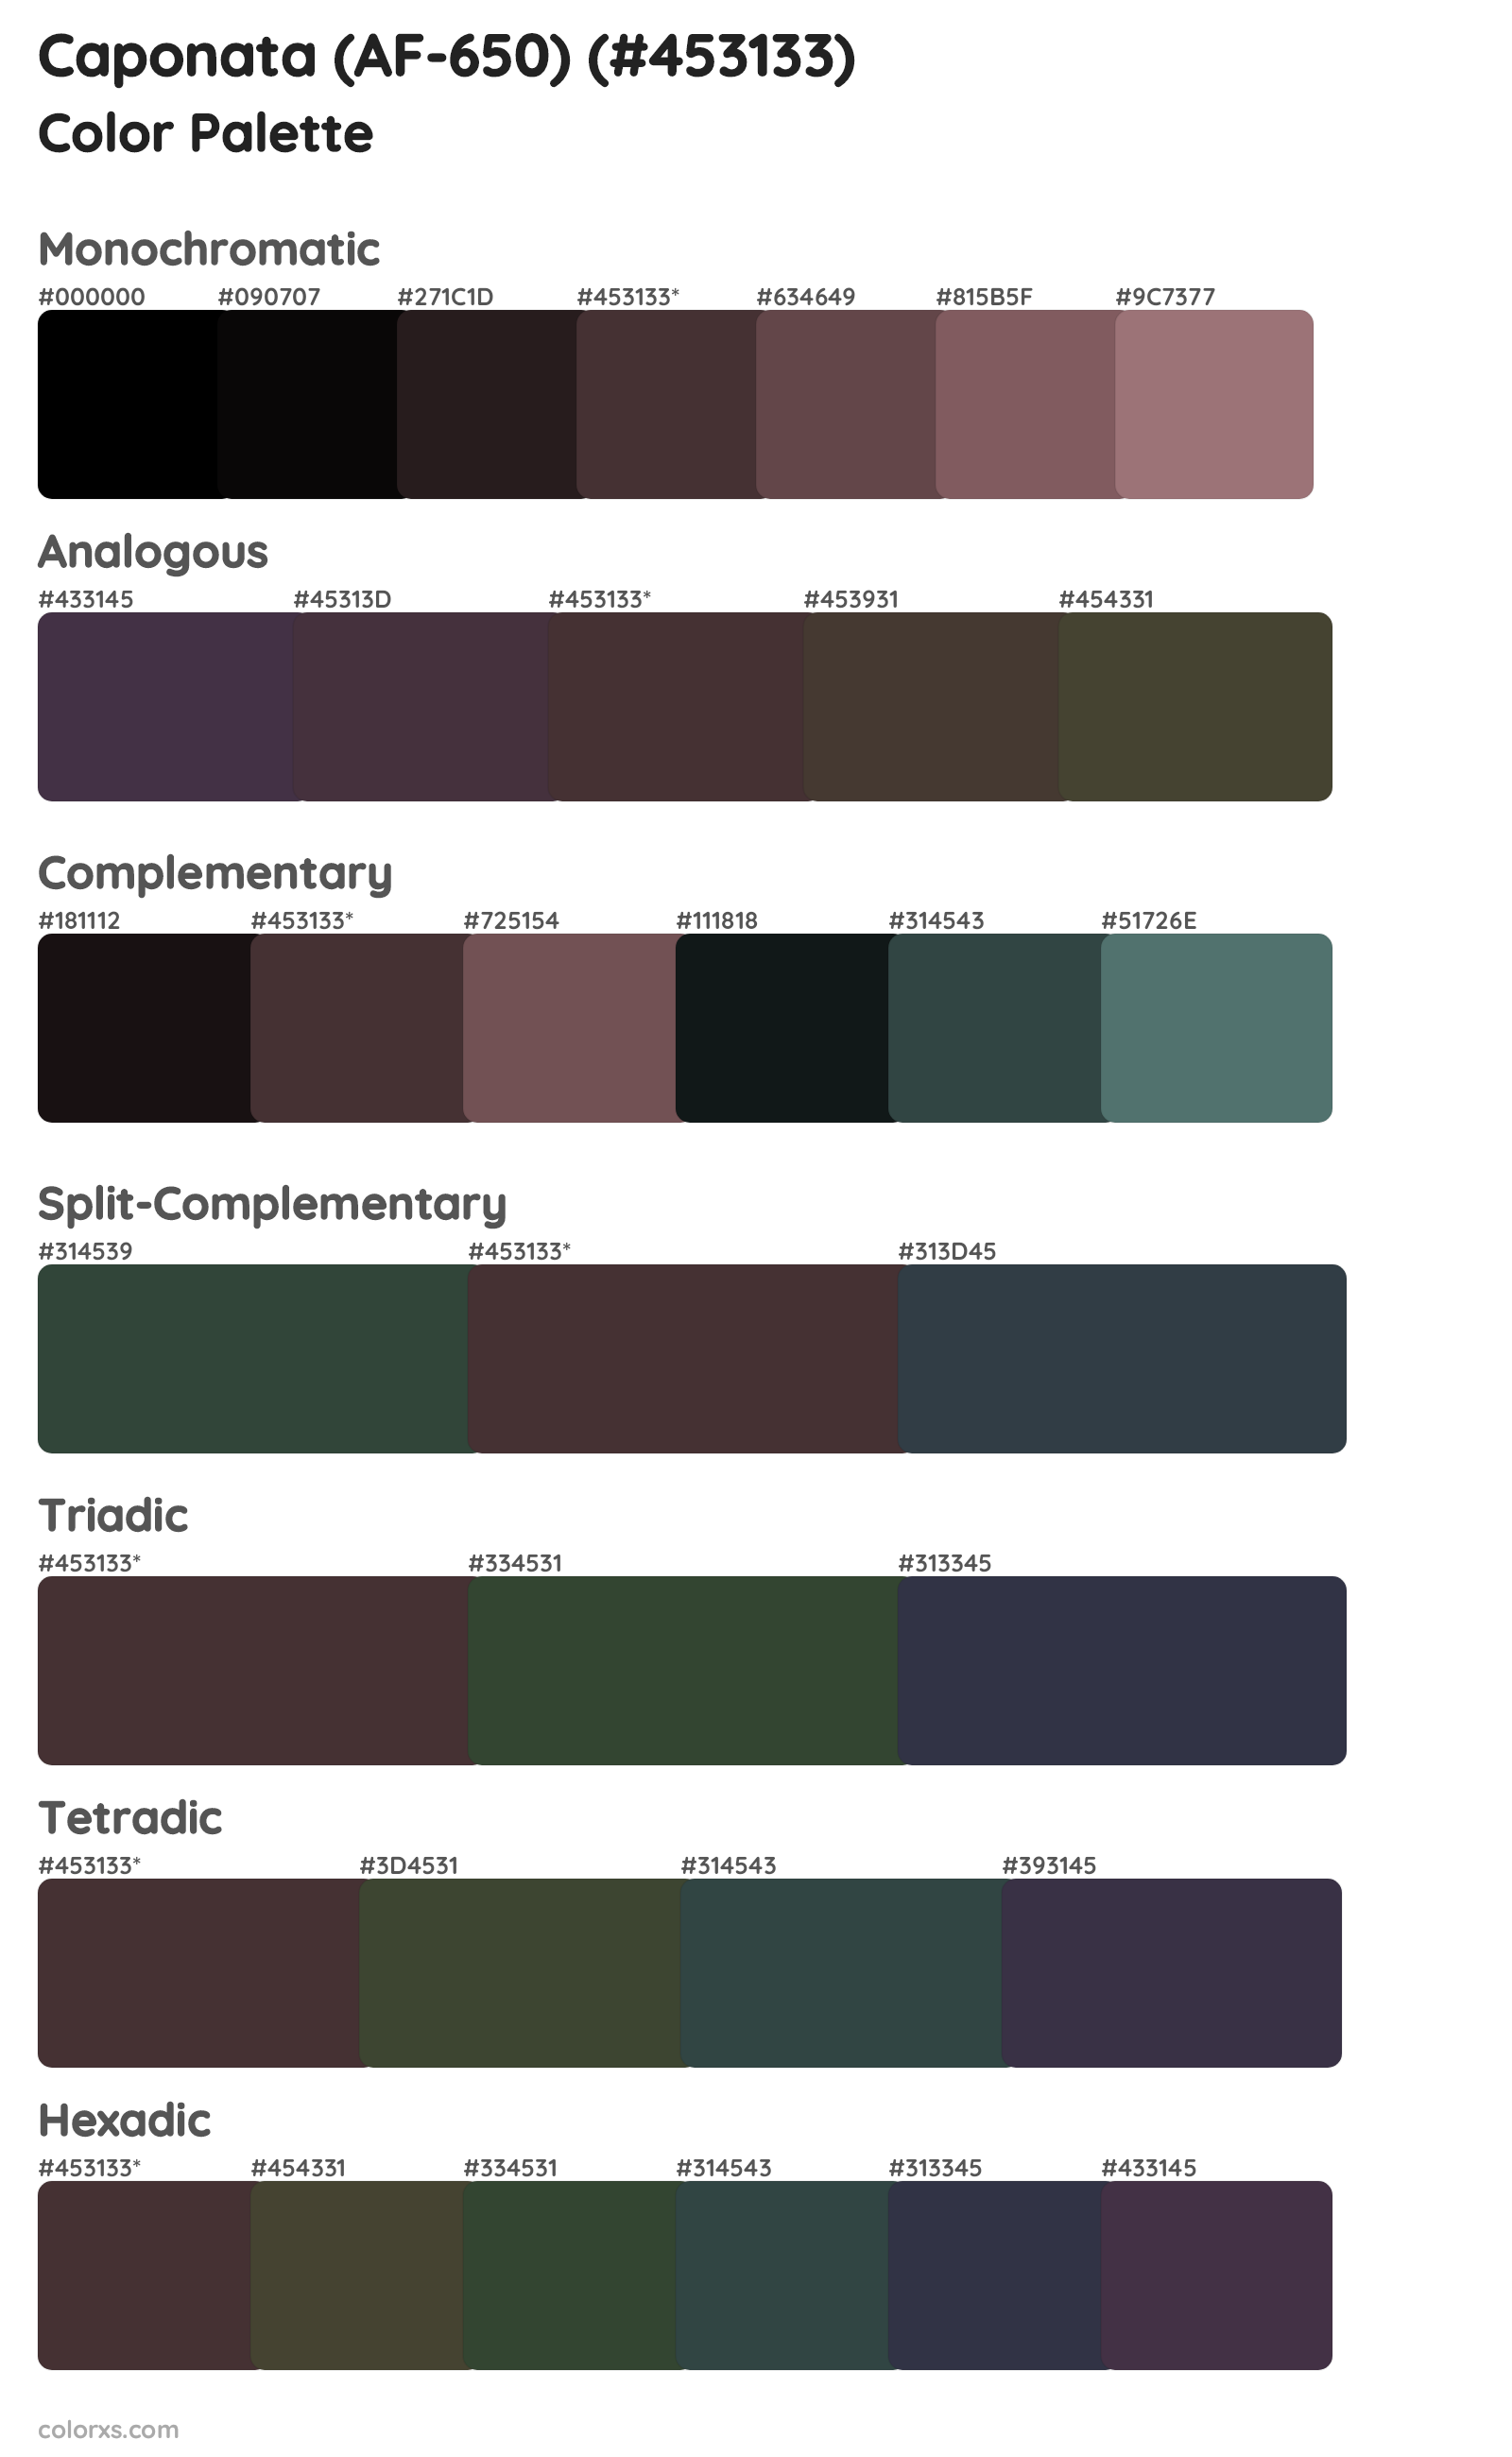 Caponata (AF-650) Color Scheme Palettes